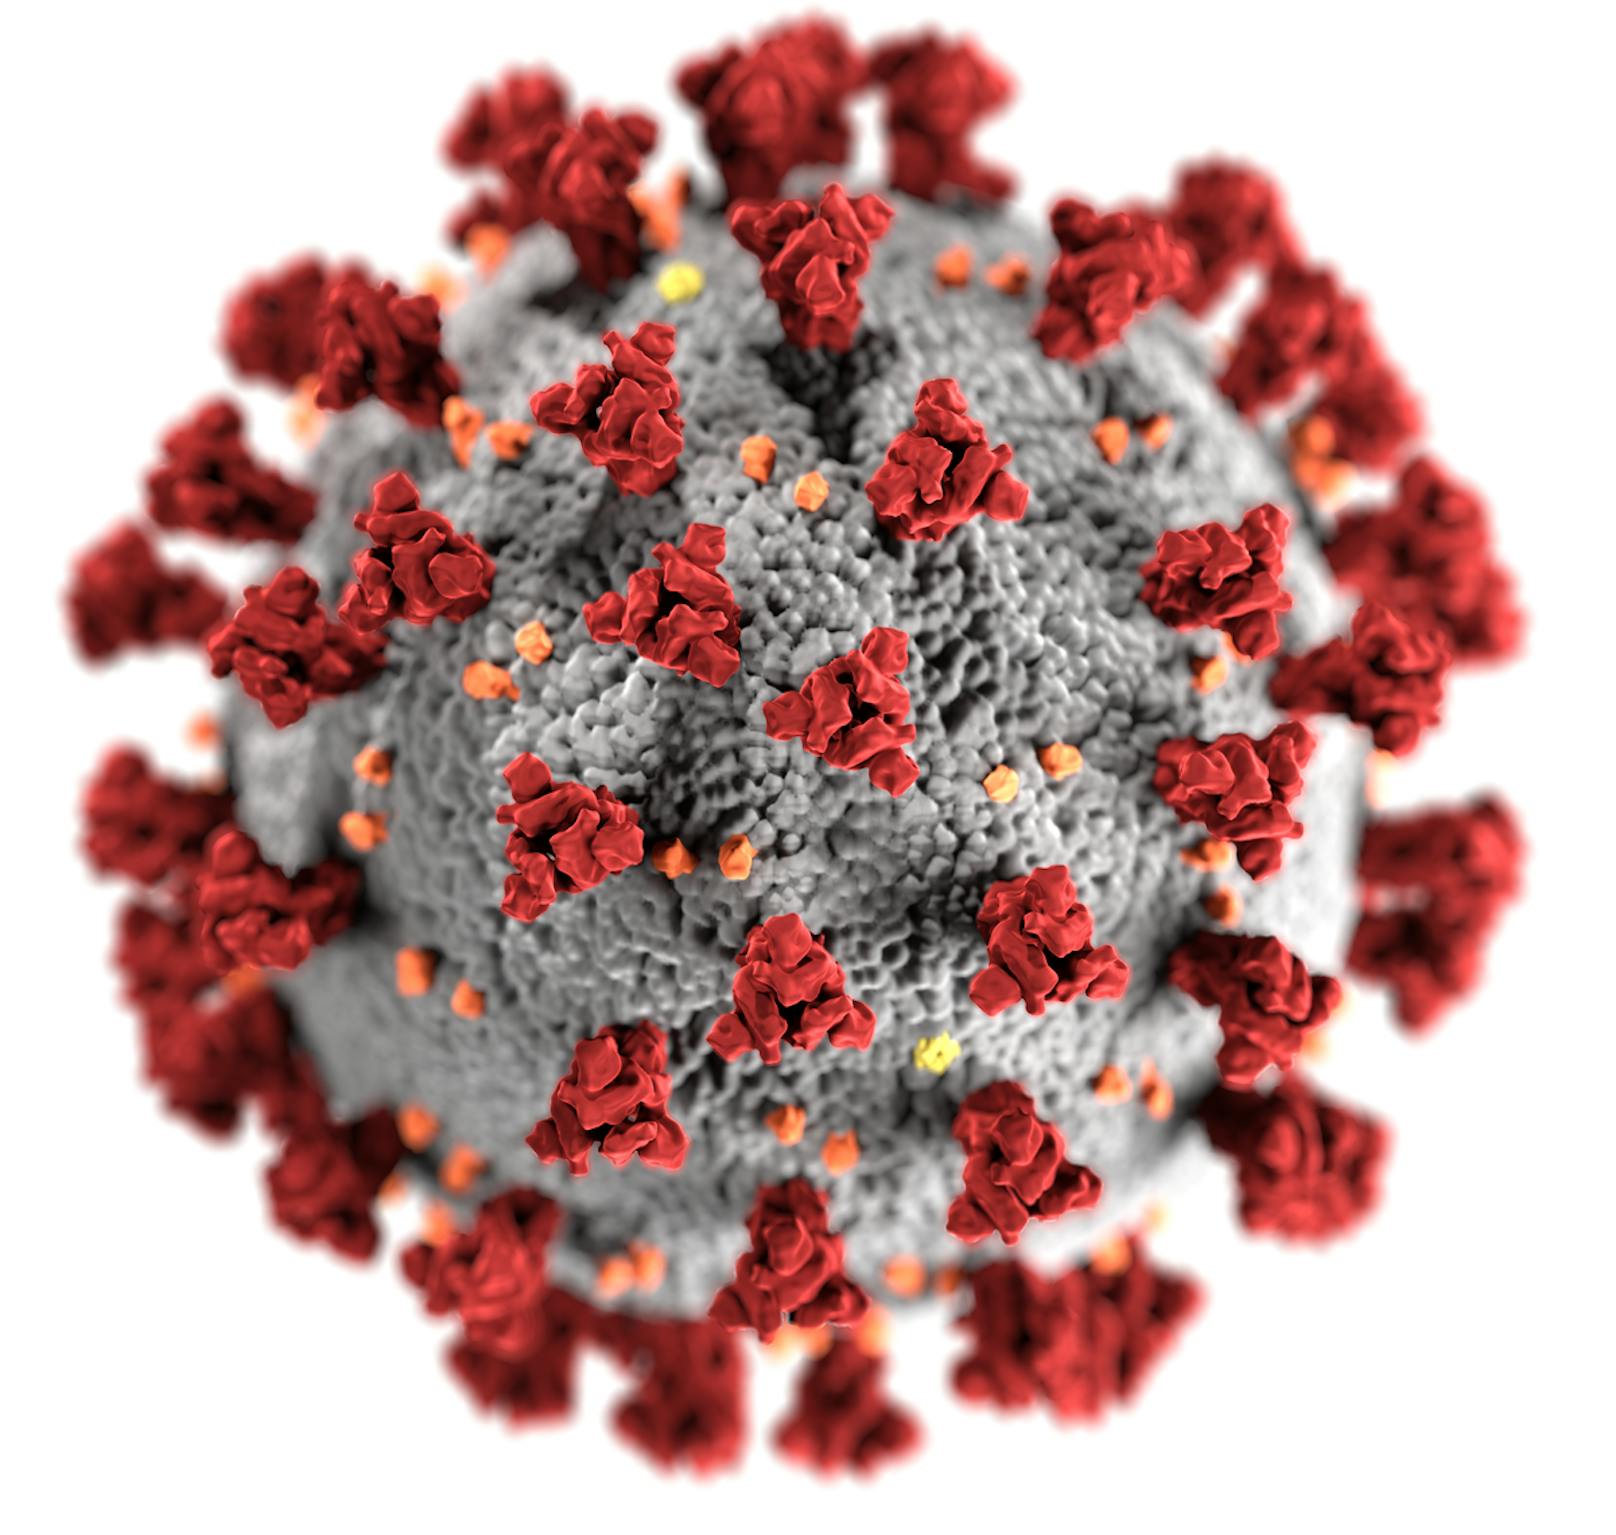 Wie alle Viren mutiert auch das Coronavirus Sars-CoV-2 ständig.